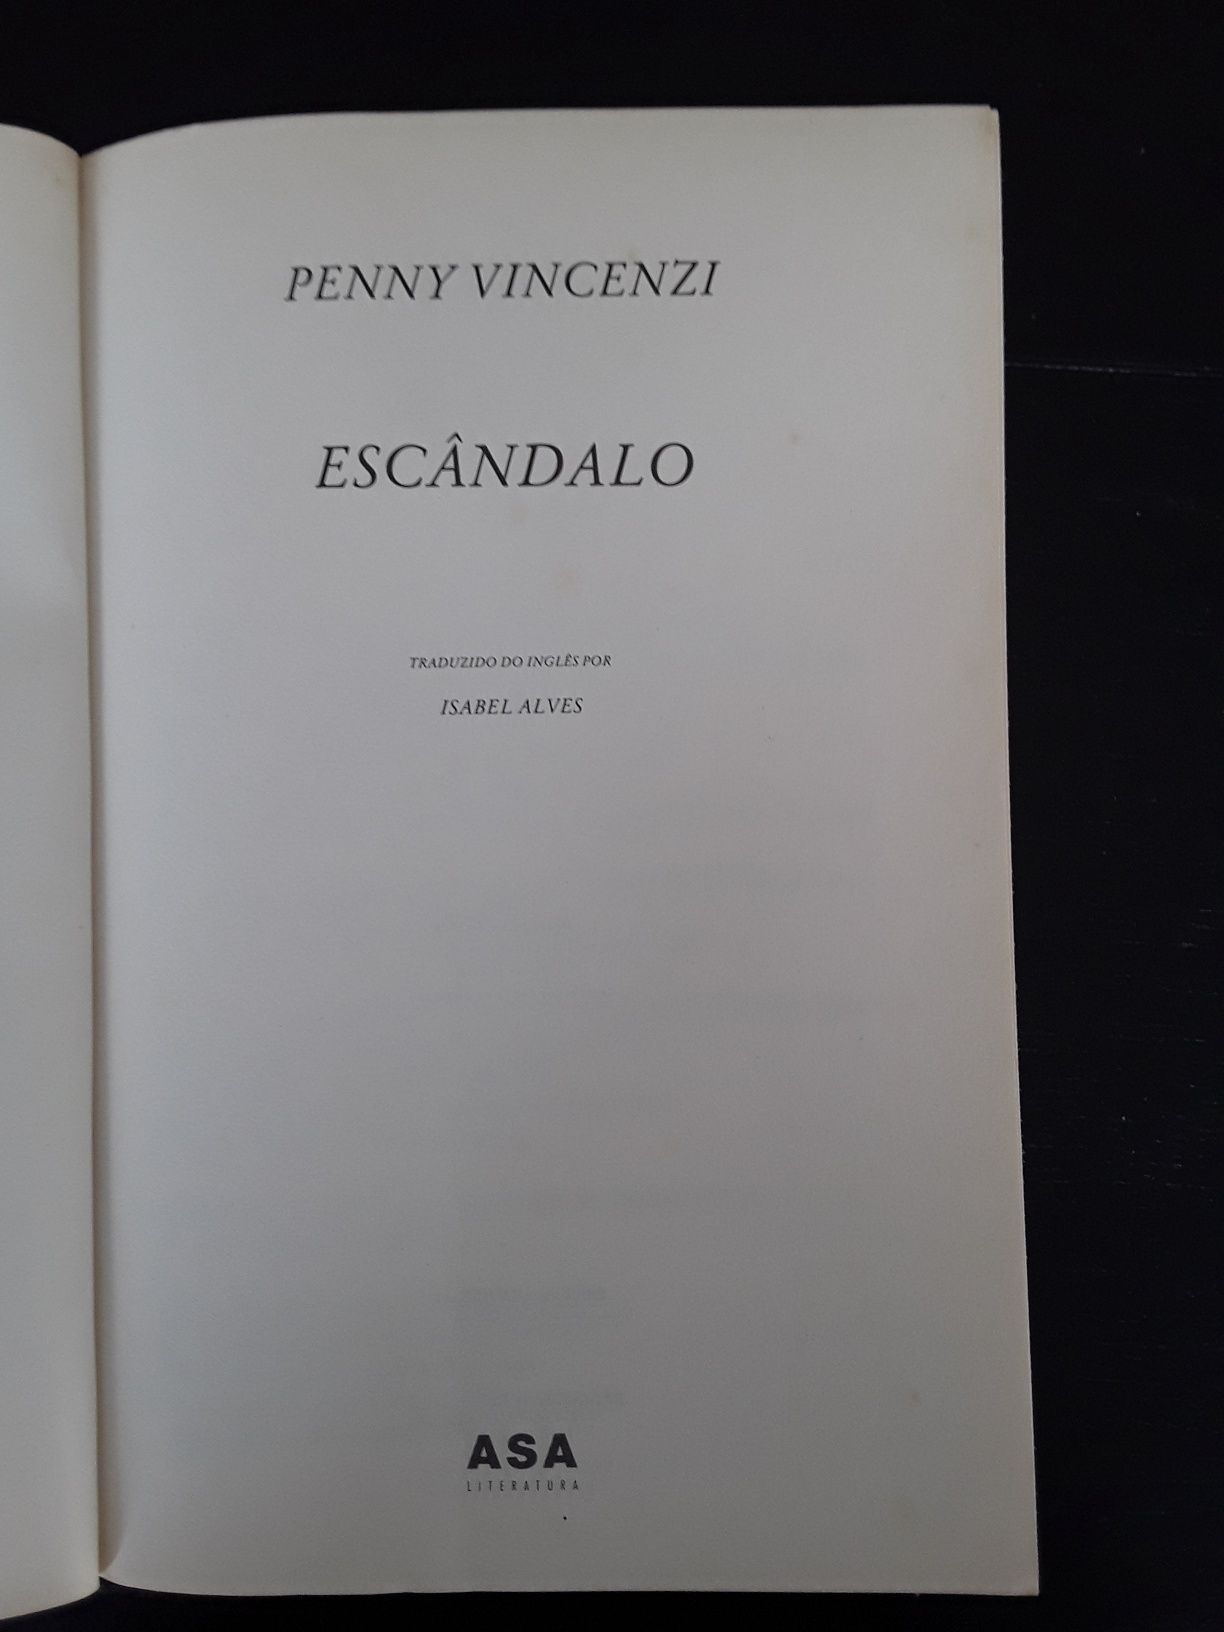 Romance  Escândalo  escrito por Penny Vincenzi